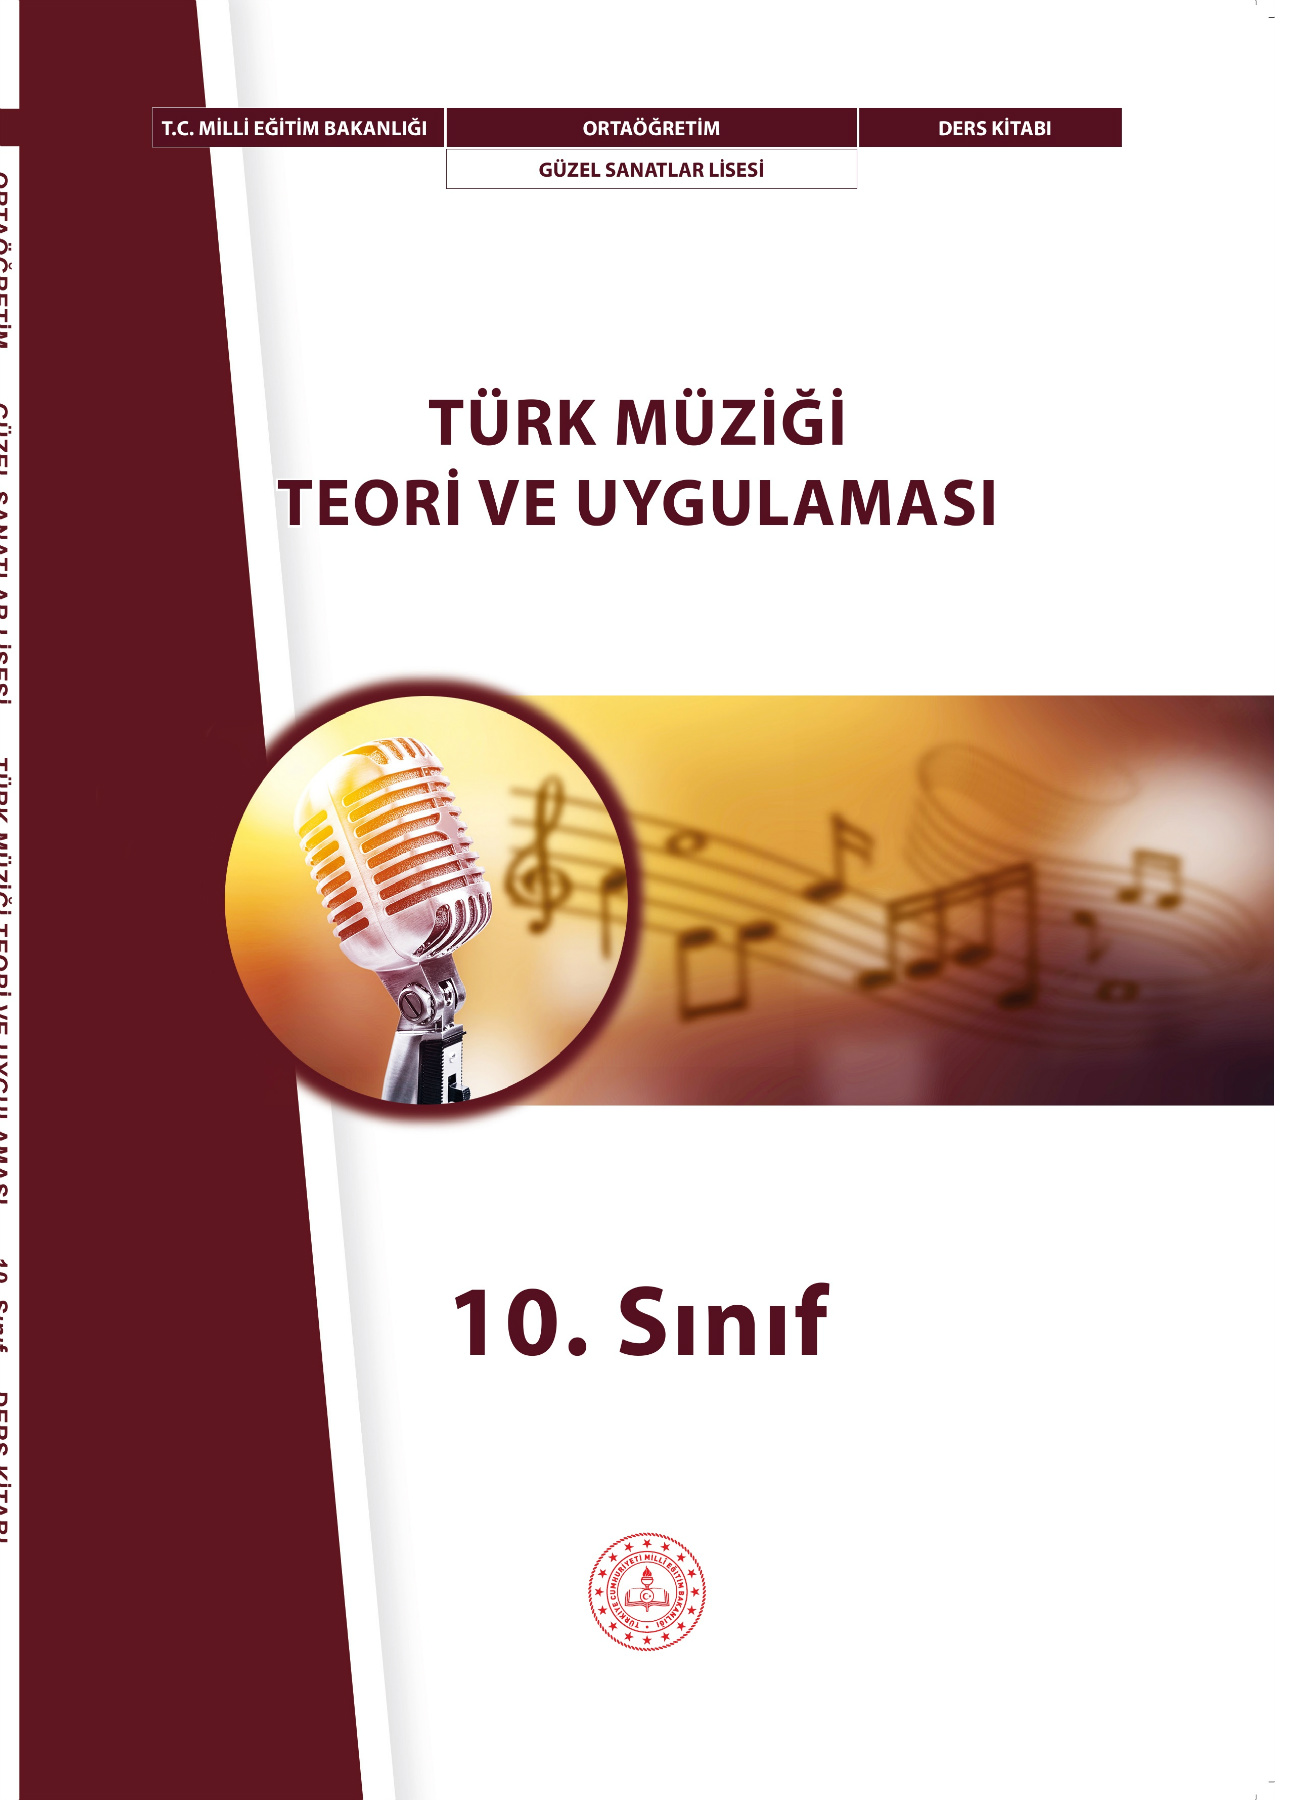 Türk Müziği Teori ve Uygulaması